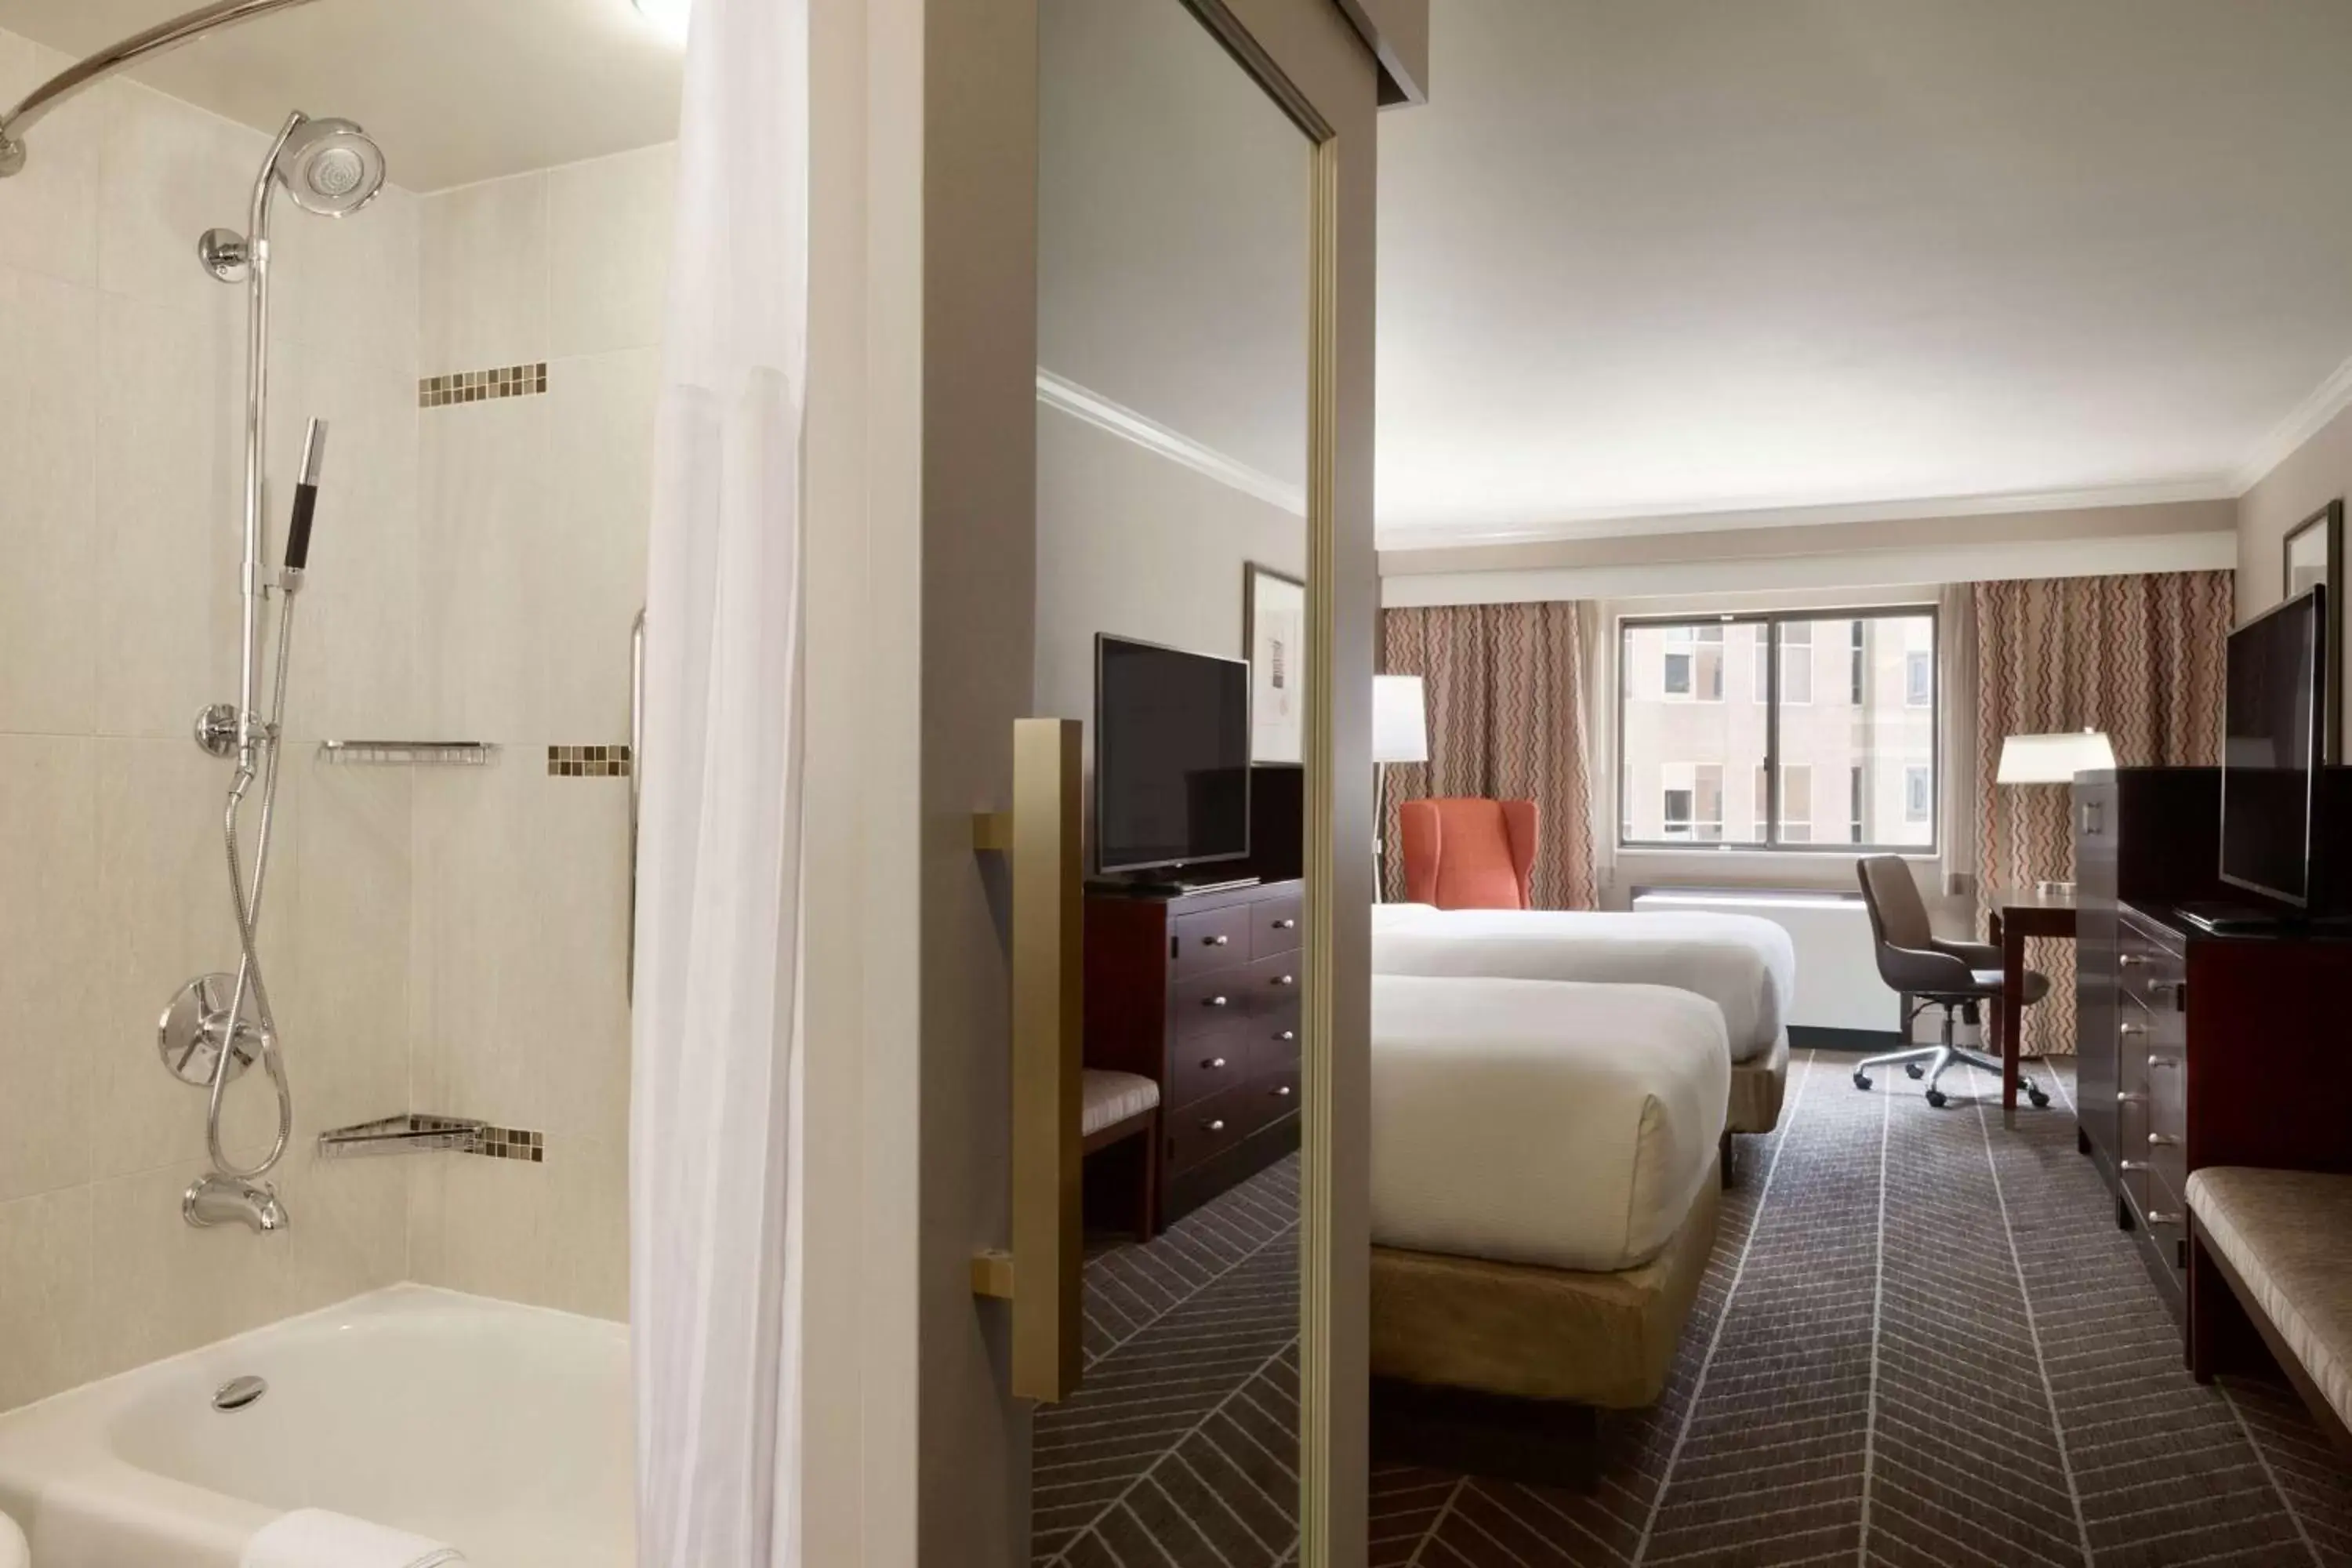 Bedroom, Bathroom in Hilton Arlington